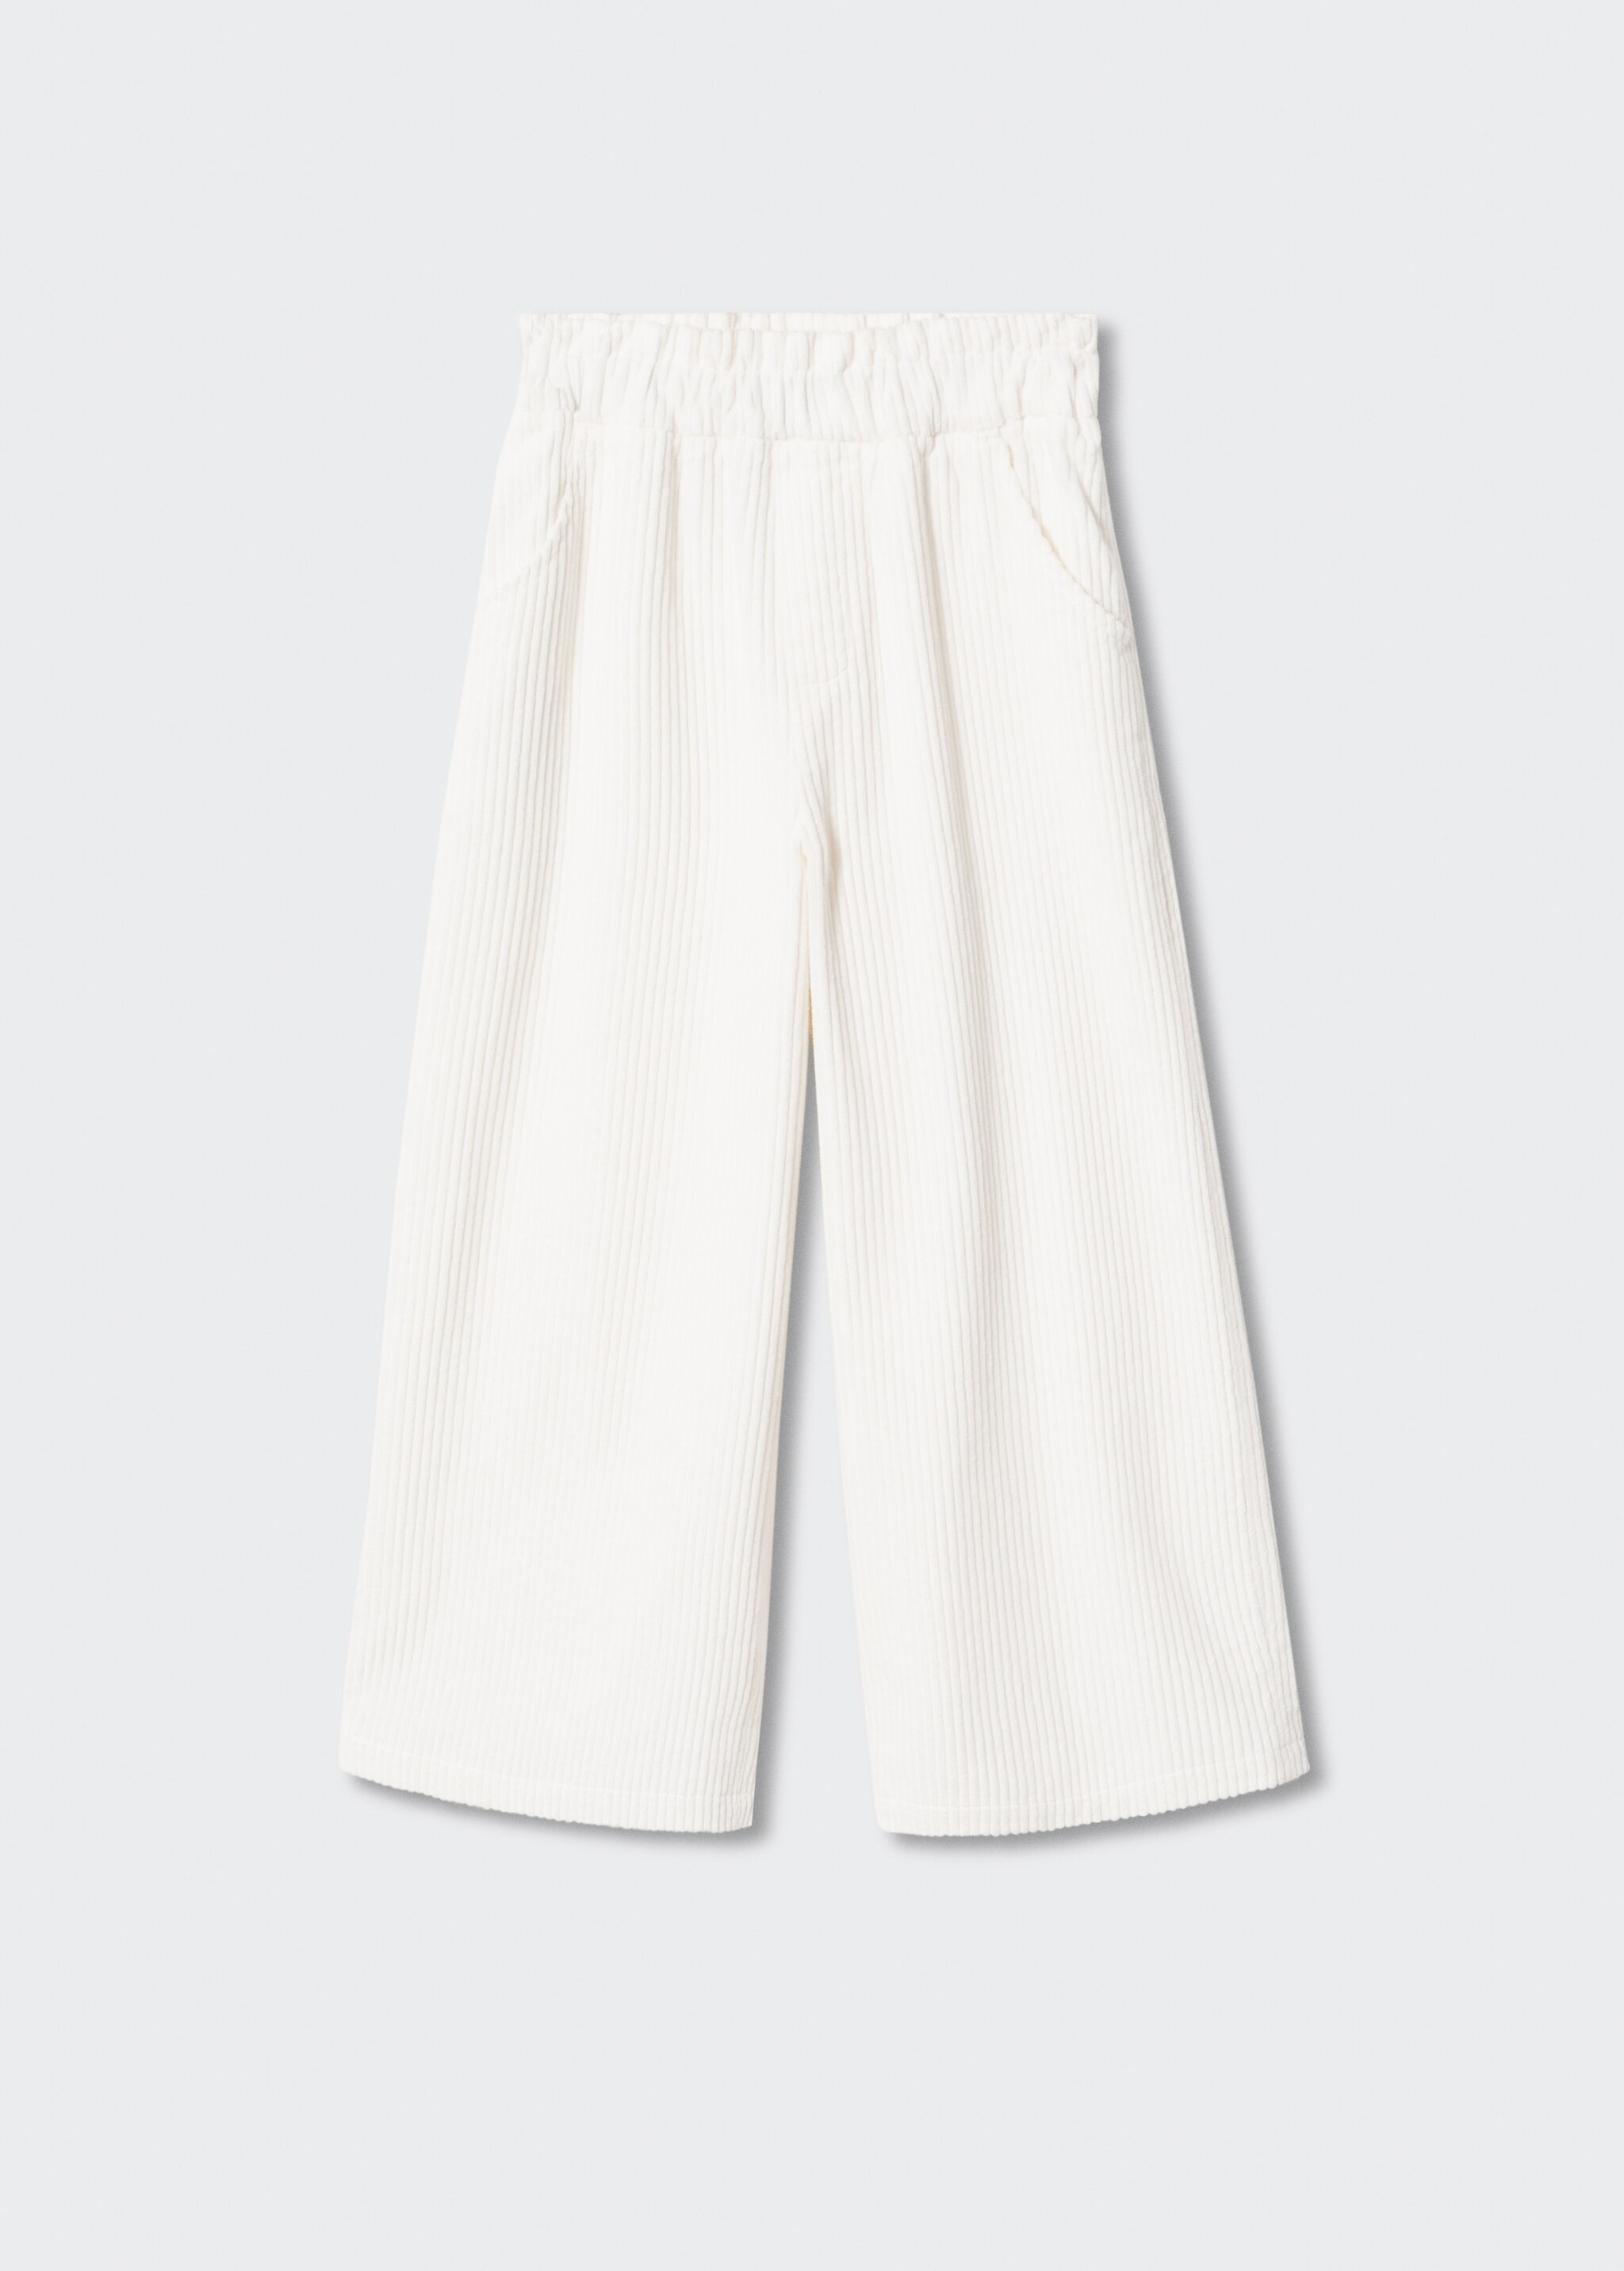 Pantalón pana culotte - Artículo sin modelo